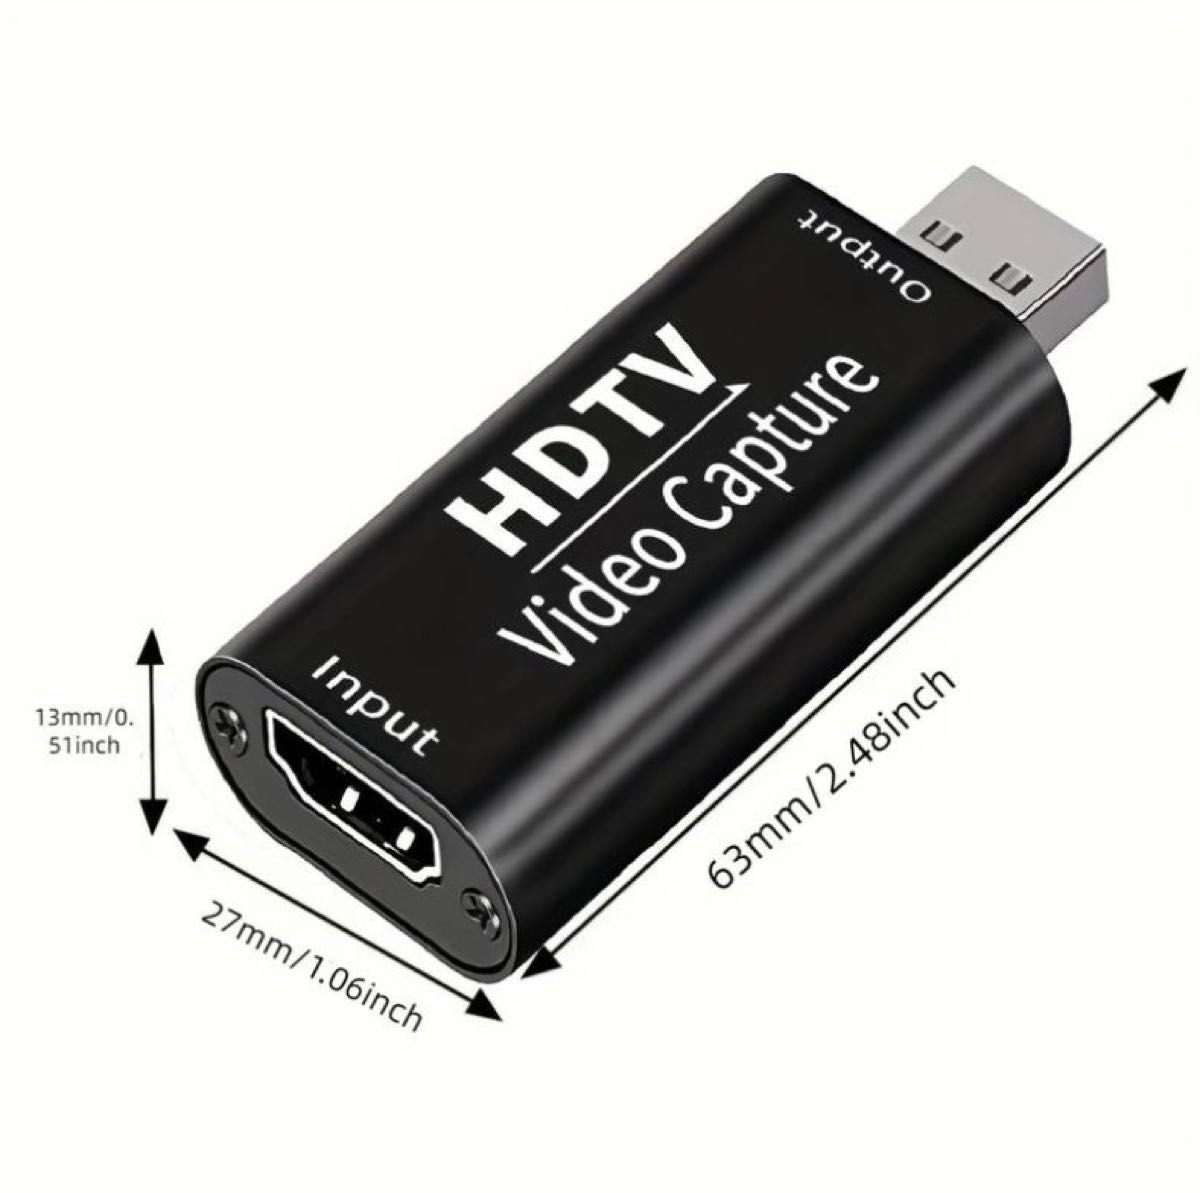 最新型 HDMI キャプチャーボード ゲームキャプチャー 60FPS 1080P 小型 軽量 電源不要